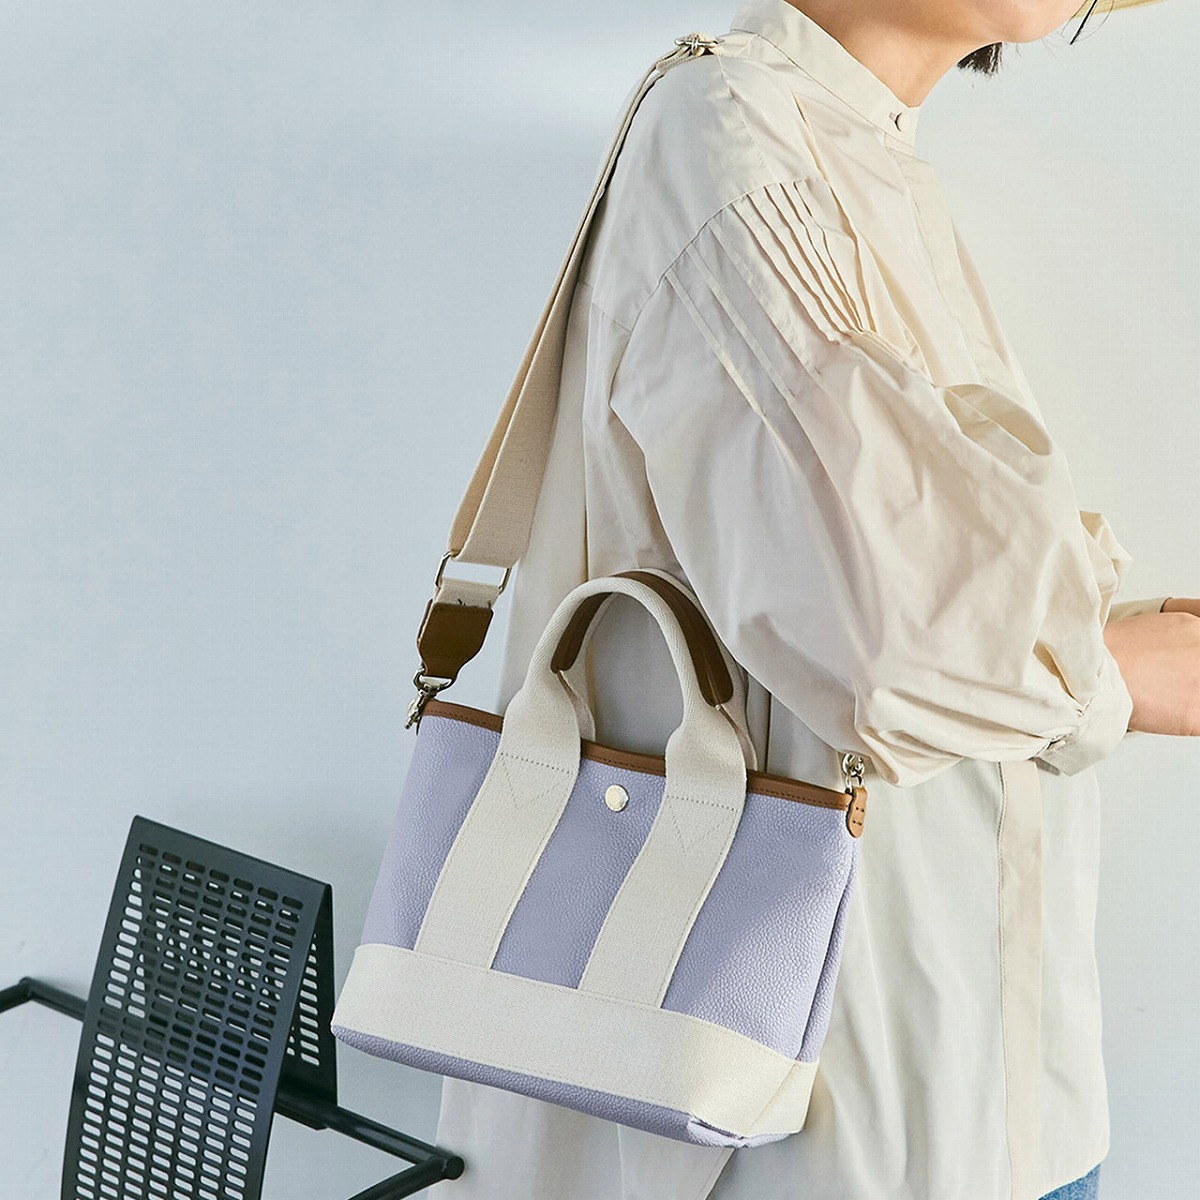 バッグ、パープル系 の通販 | ファッション通販 マルイウェブチャネル